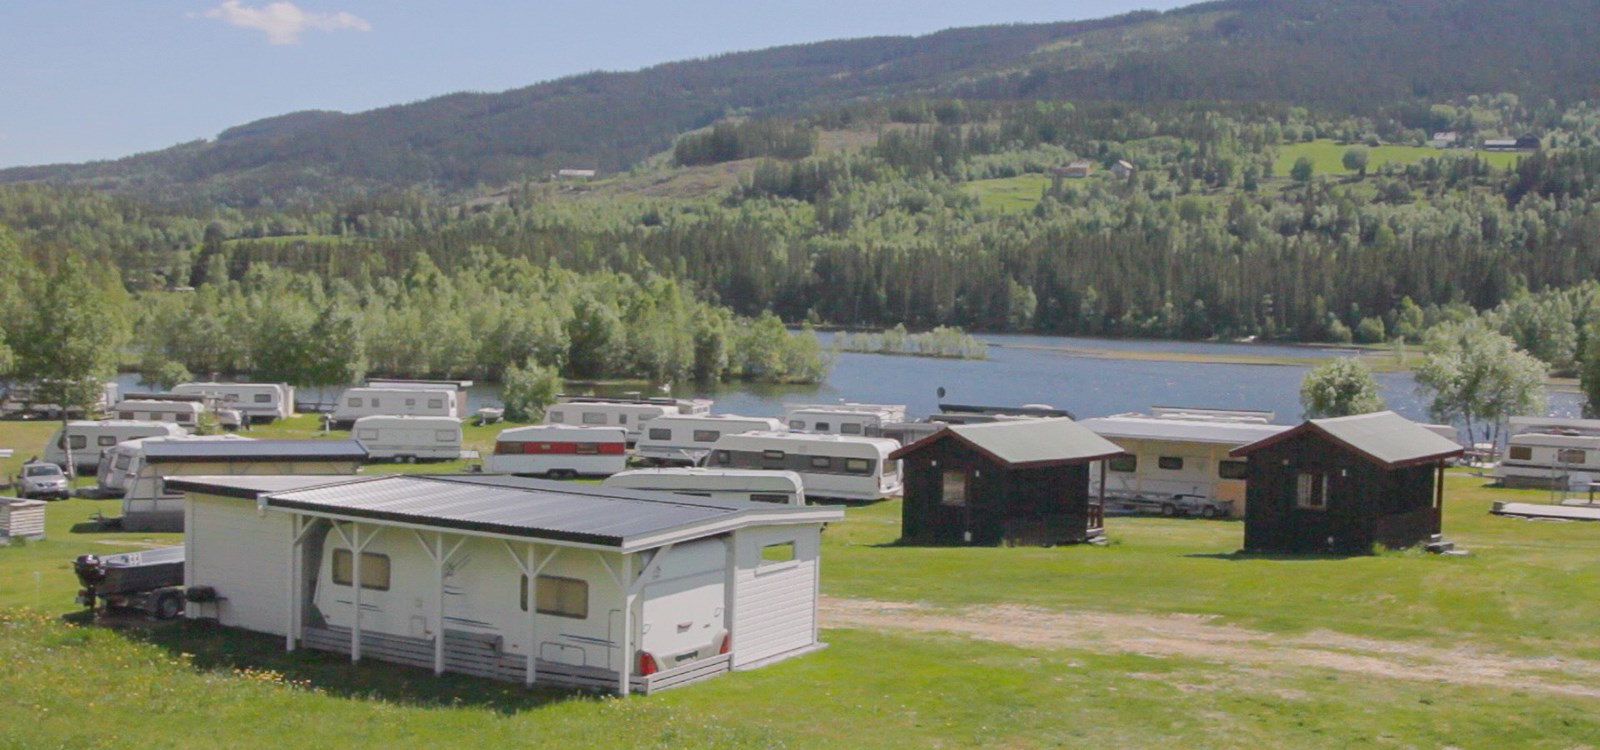 Campingområdet ved Hålimo camping er litt utvida og oppgradert før årets sesong. Foto: Åshild Samseth